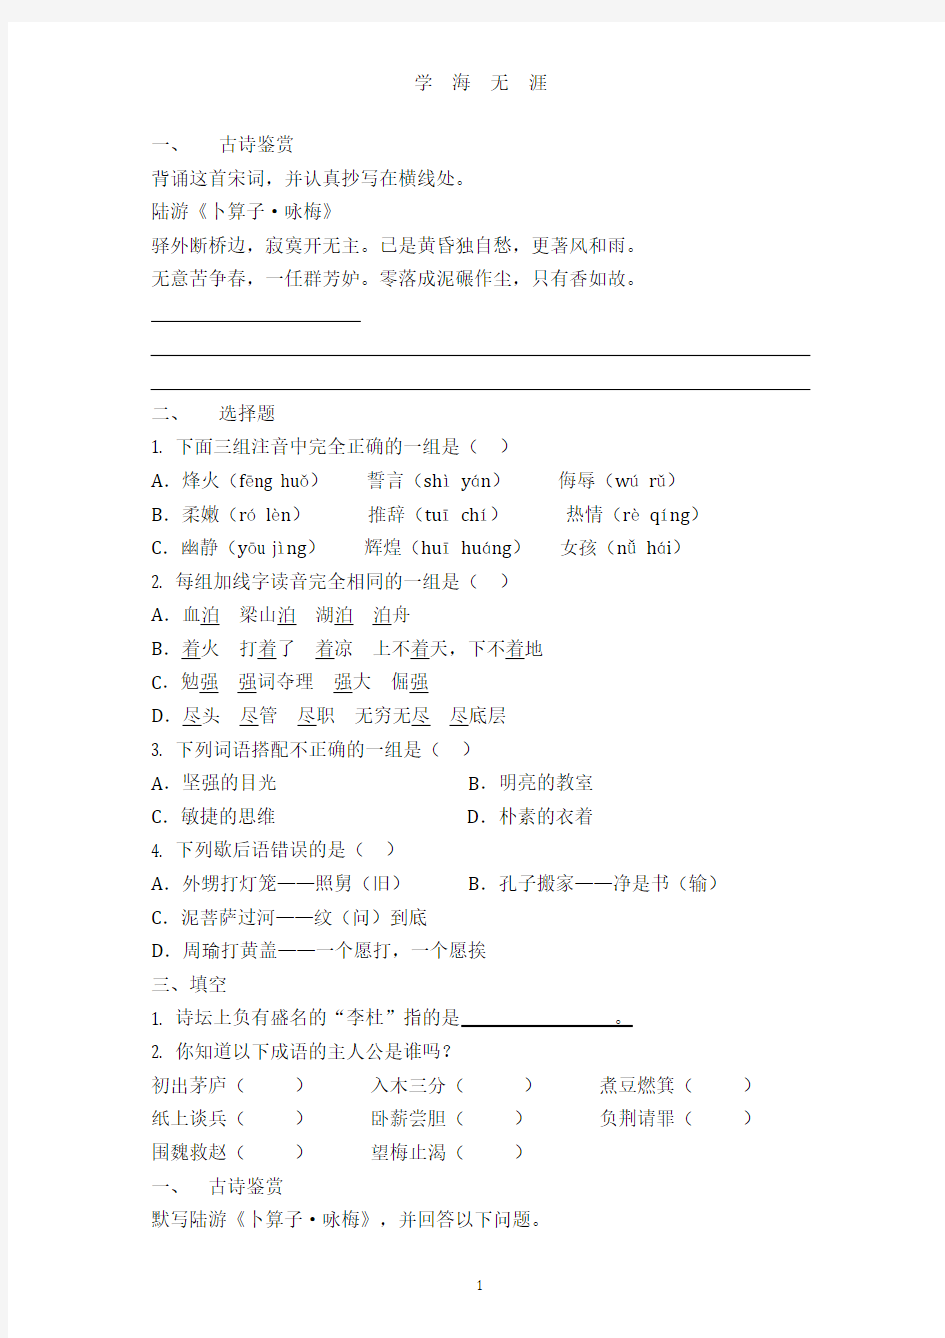 小升初暑假作业(2020年7月整理).pdf